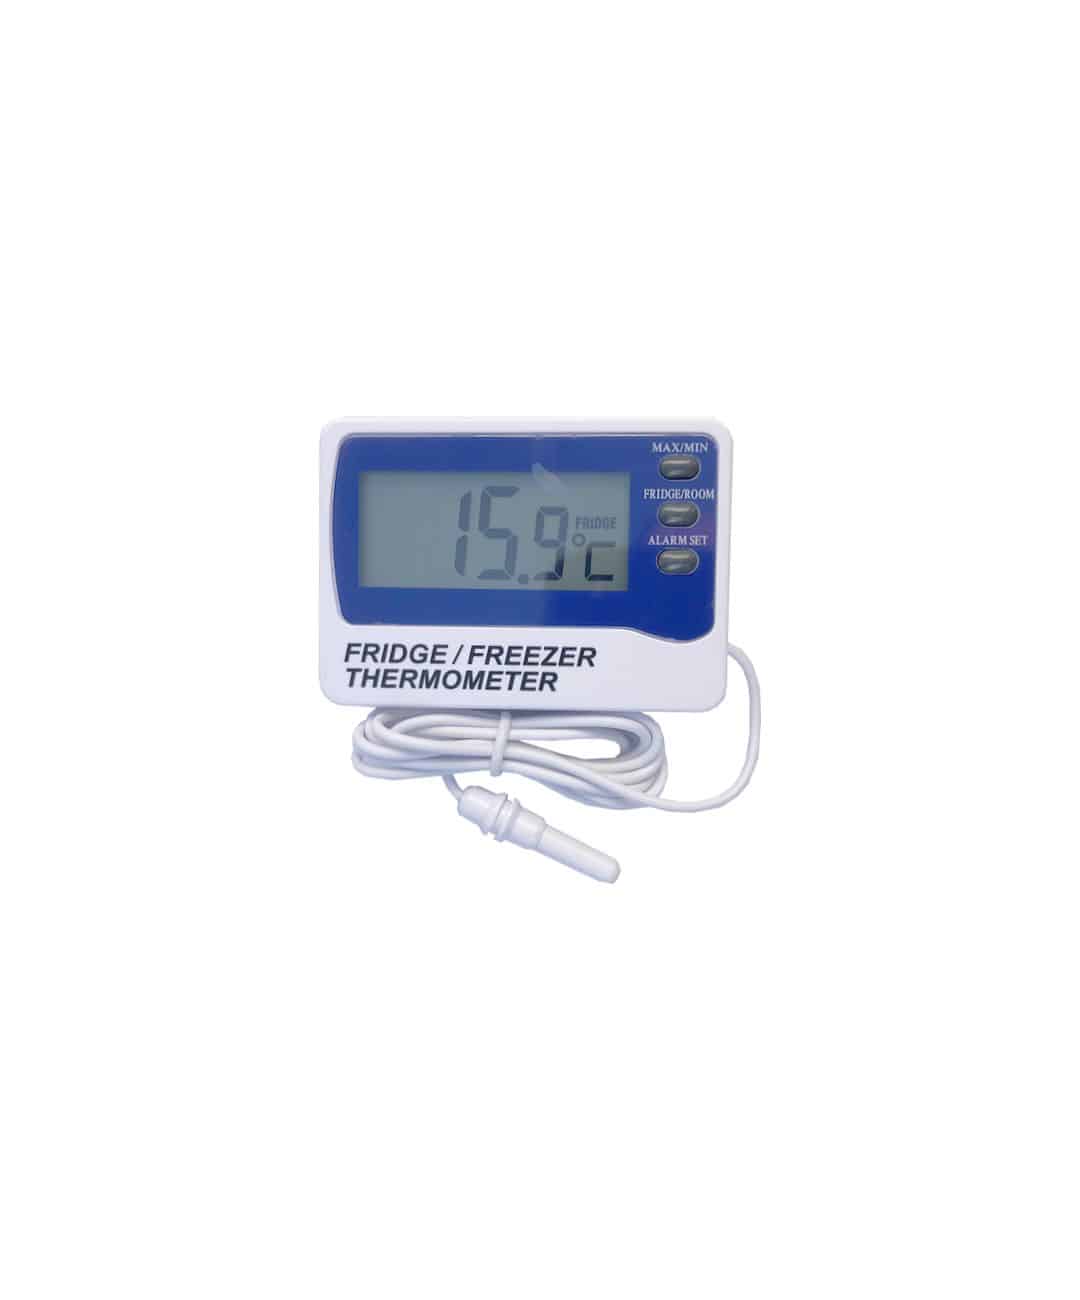 Digital Max/Min Fridge Freezer Thermometer